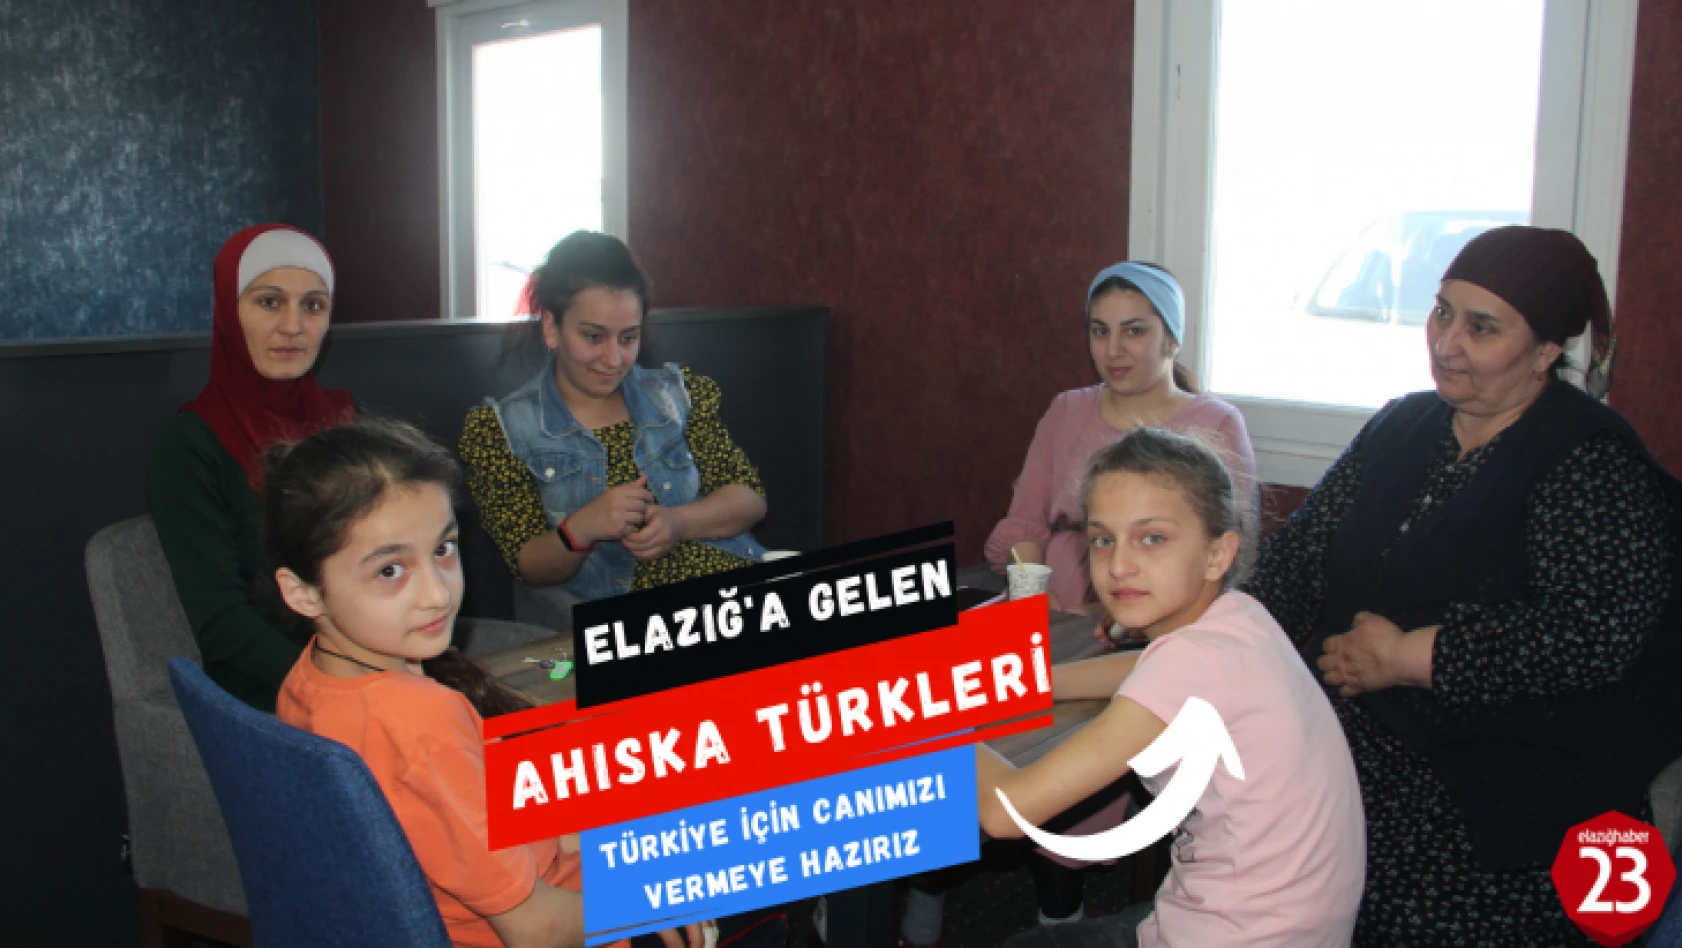 Elazığ'a Getirilen Ahıska Türkleri, Türkiye ve Bayrağımız İçin Canımızı Vermeye Hazırız